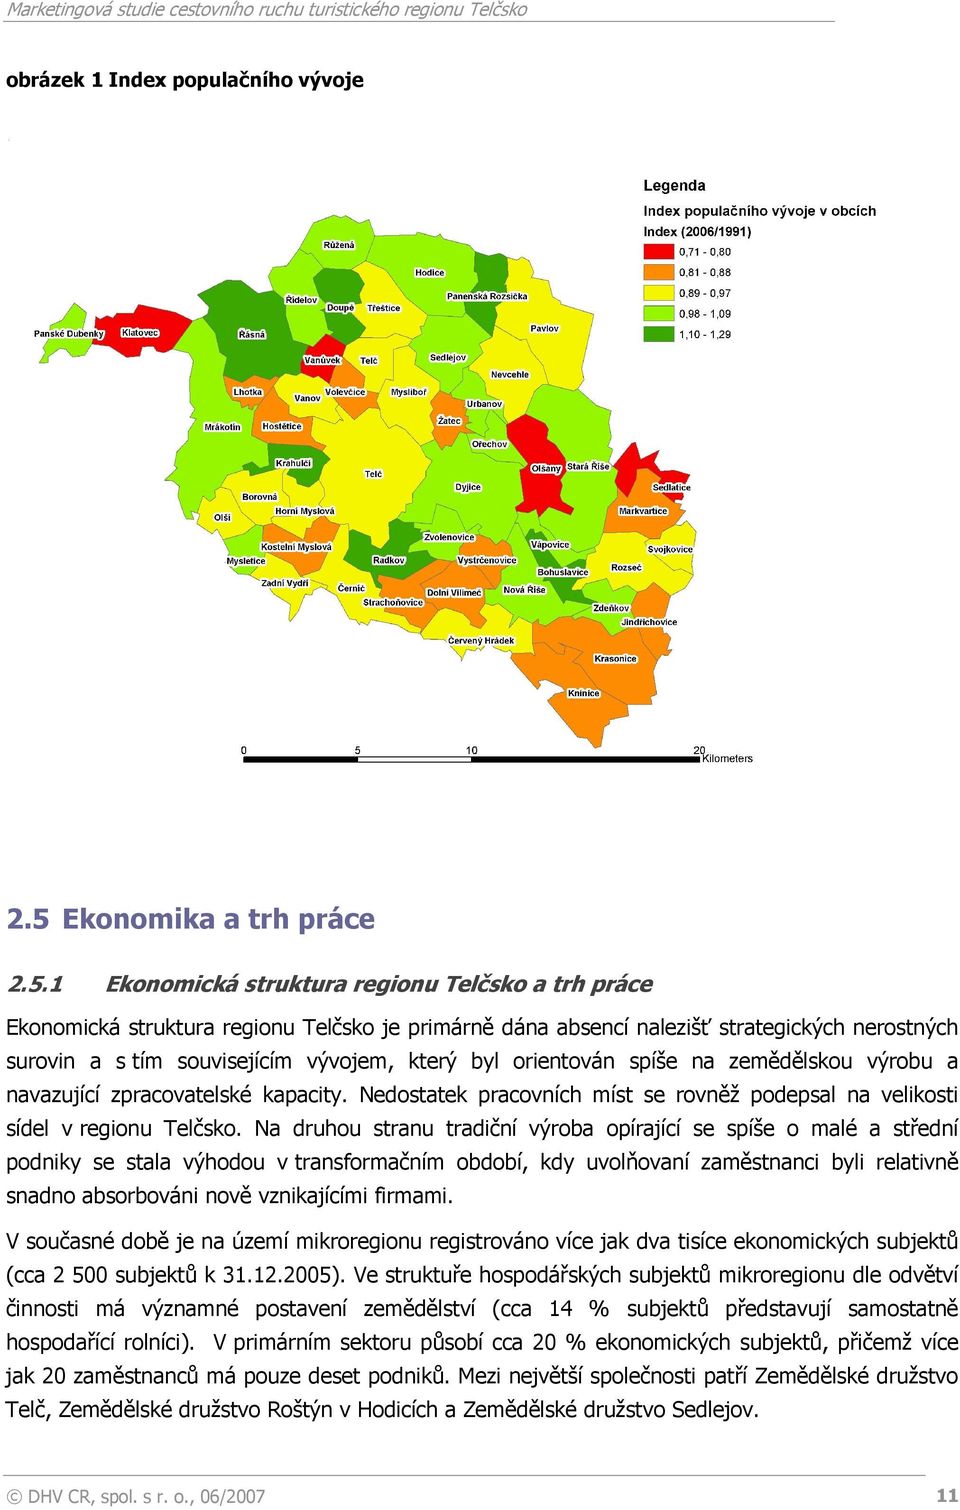 1 Ekonomická struktura regionu Telčsko a trh práce Ekonomická struktura regionu Telčsko je primárně dána absencí nalezišť strategických nerostných surovin a s tím souvisejícím vývojem, který byl